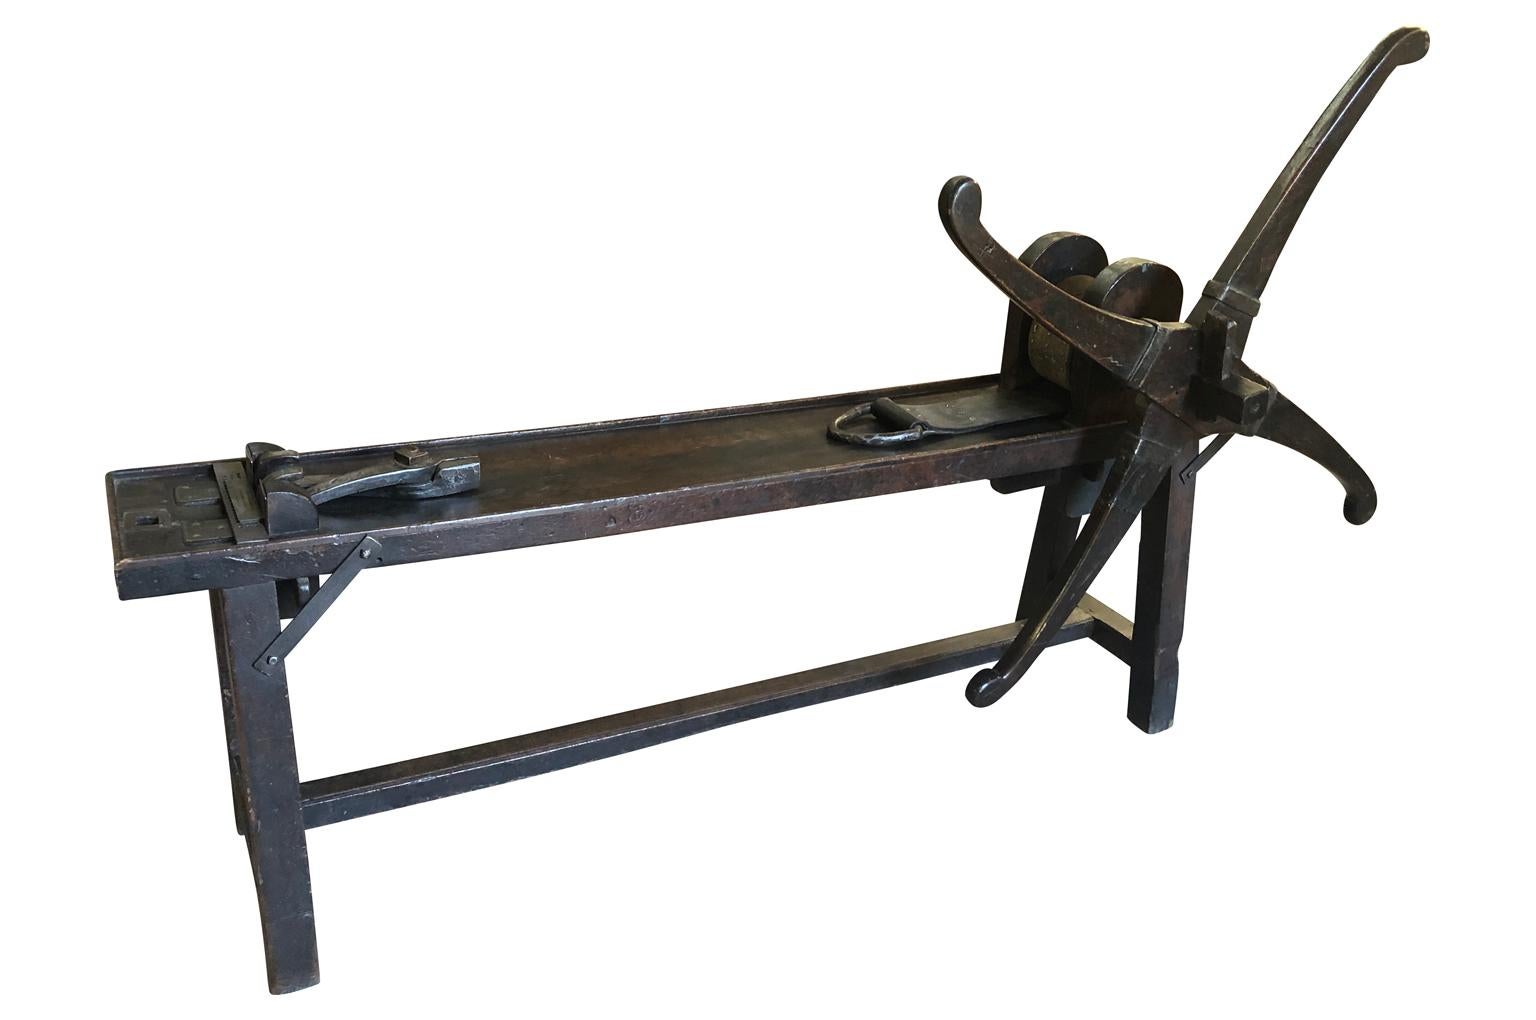 Ein faszinierendes französisches Etabli aus der Mitte des 18. Jahrhunderts - Arbeitstisch zur Herstellung von Kupfer- oder Metalldrähten. Wunderschön aus Holz gefertigt, mit Spinnrad, Lederriemen und wunderschönen Eisenbeschlägen. Ein echtes